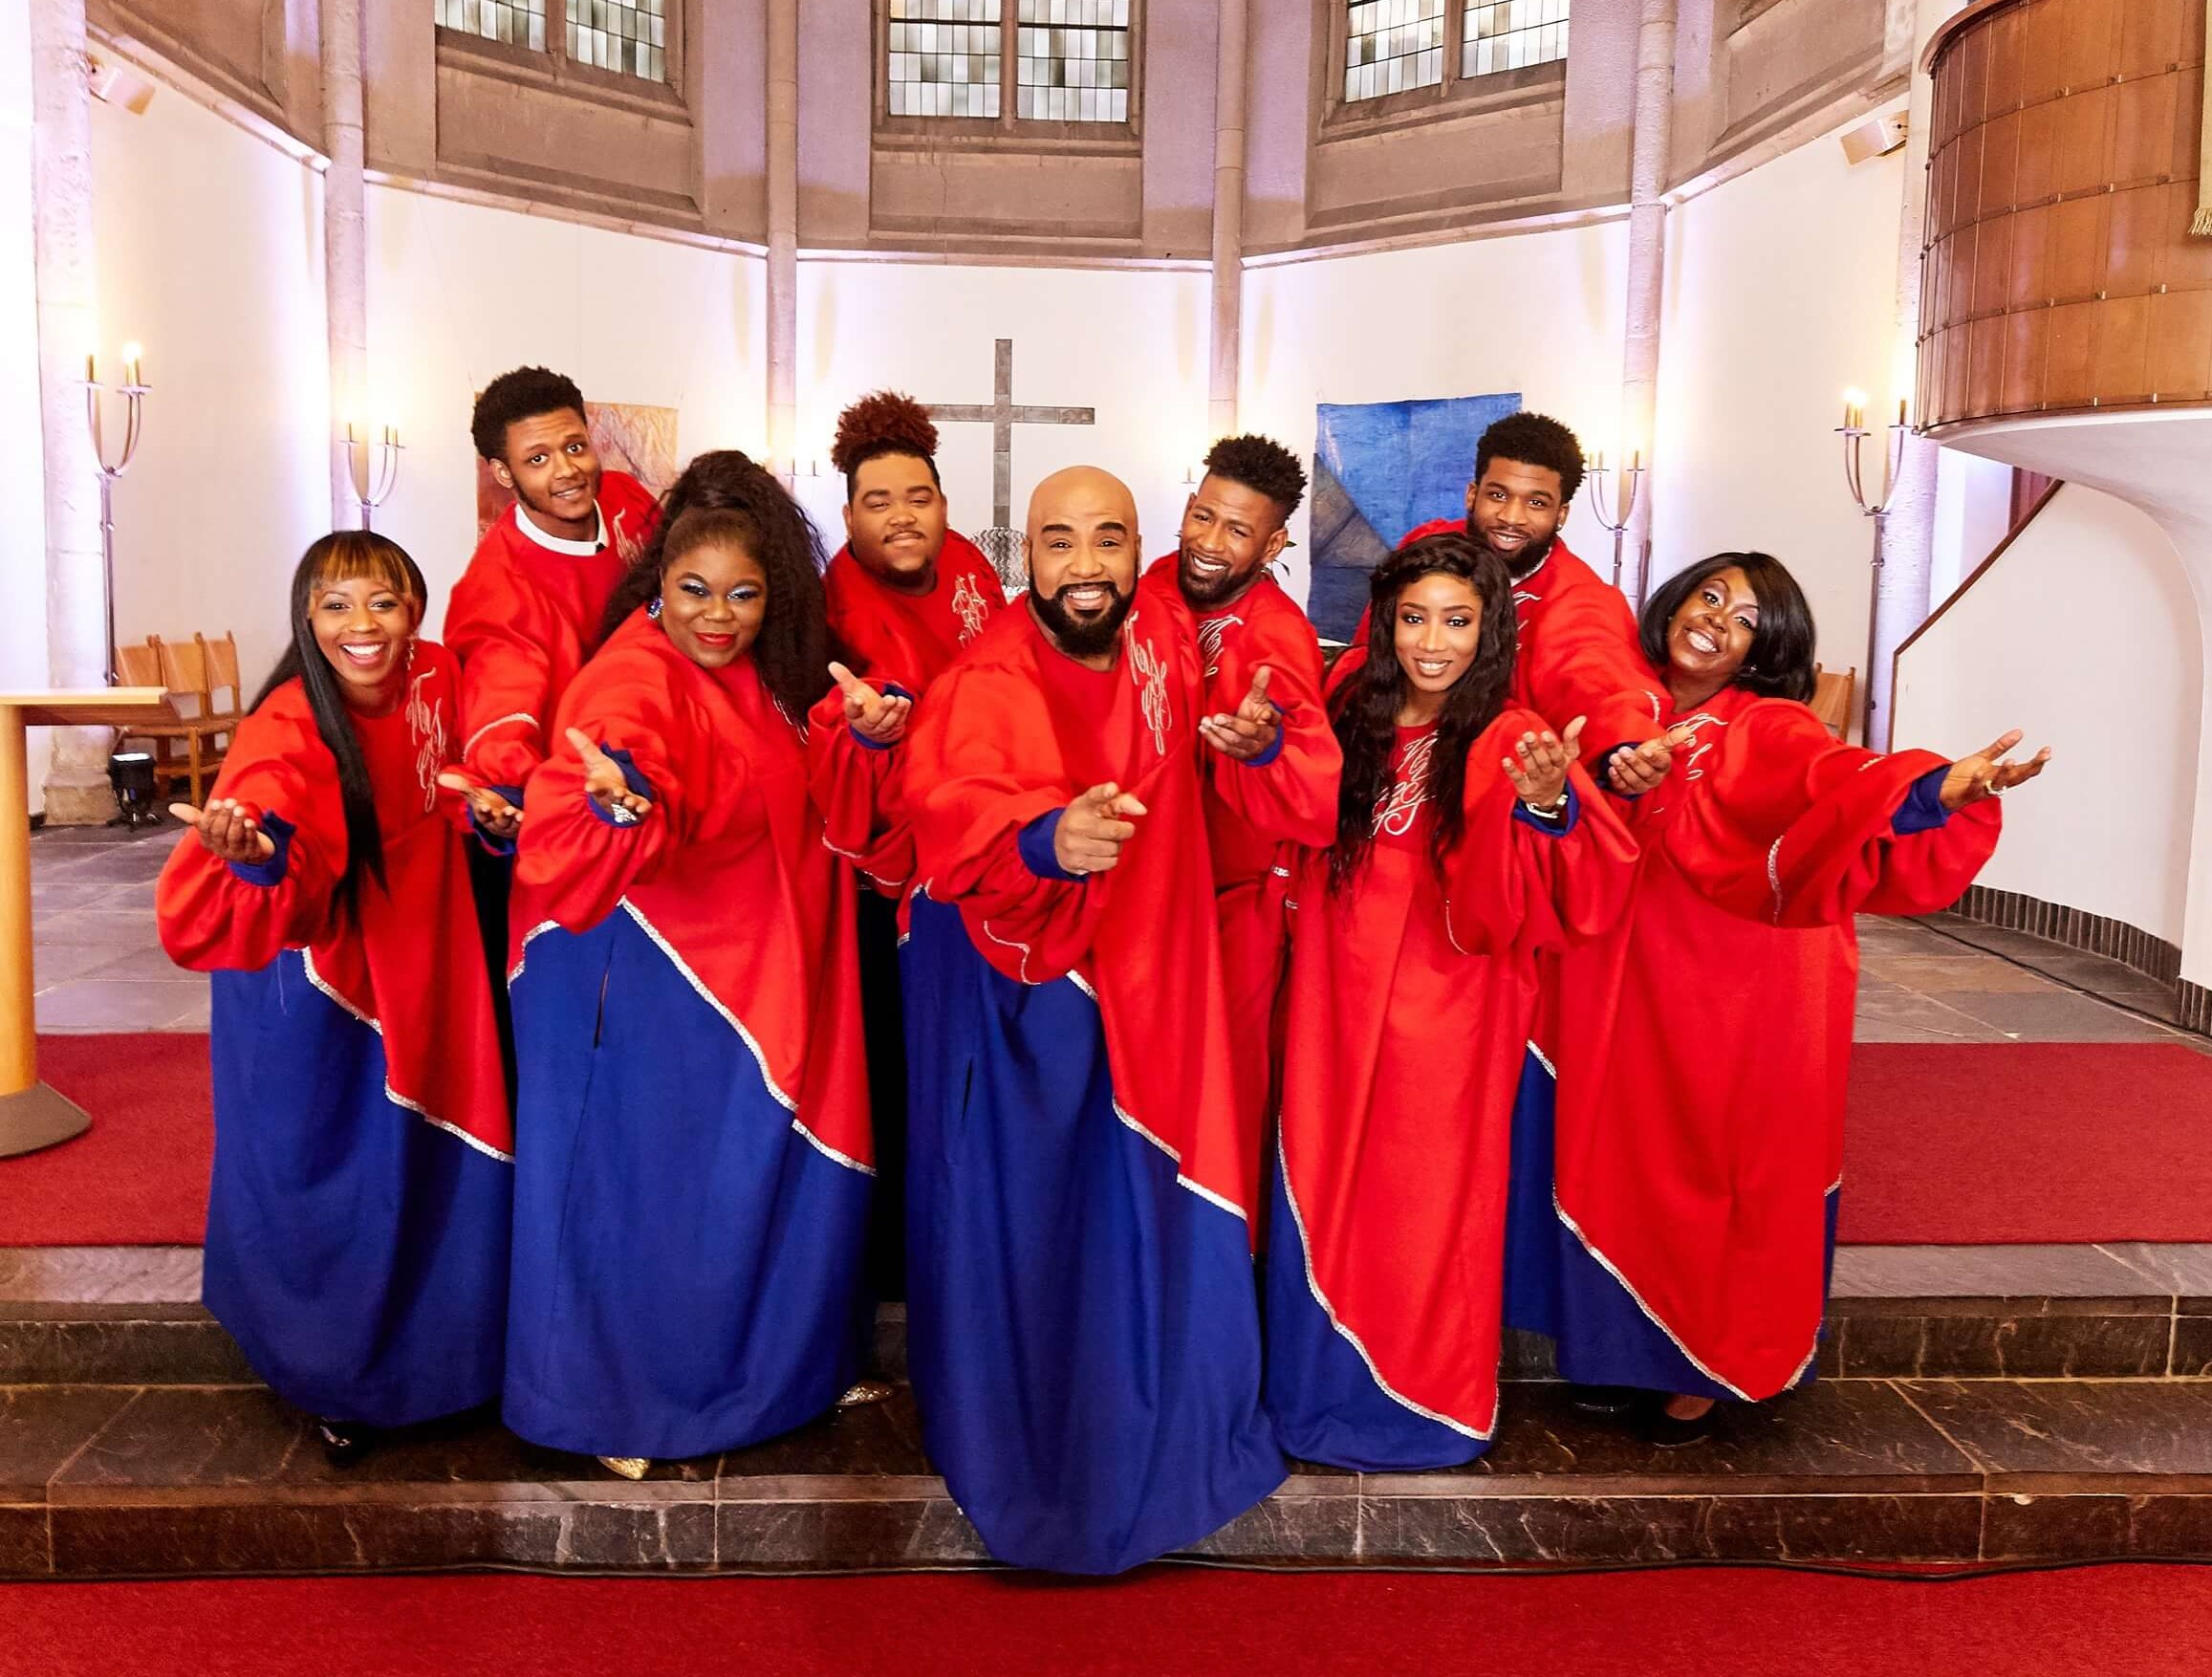 Sängerinnen und Sänger in rot-blauen-Roben